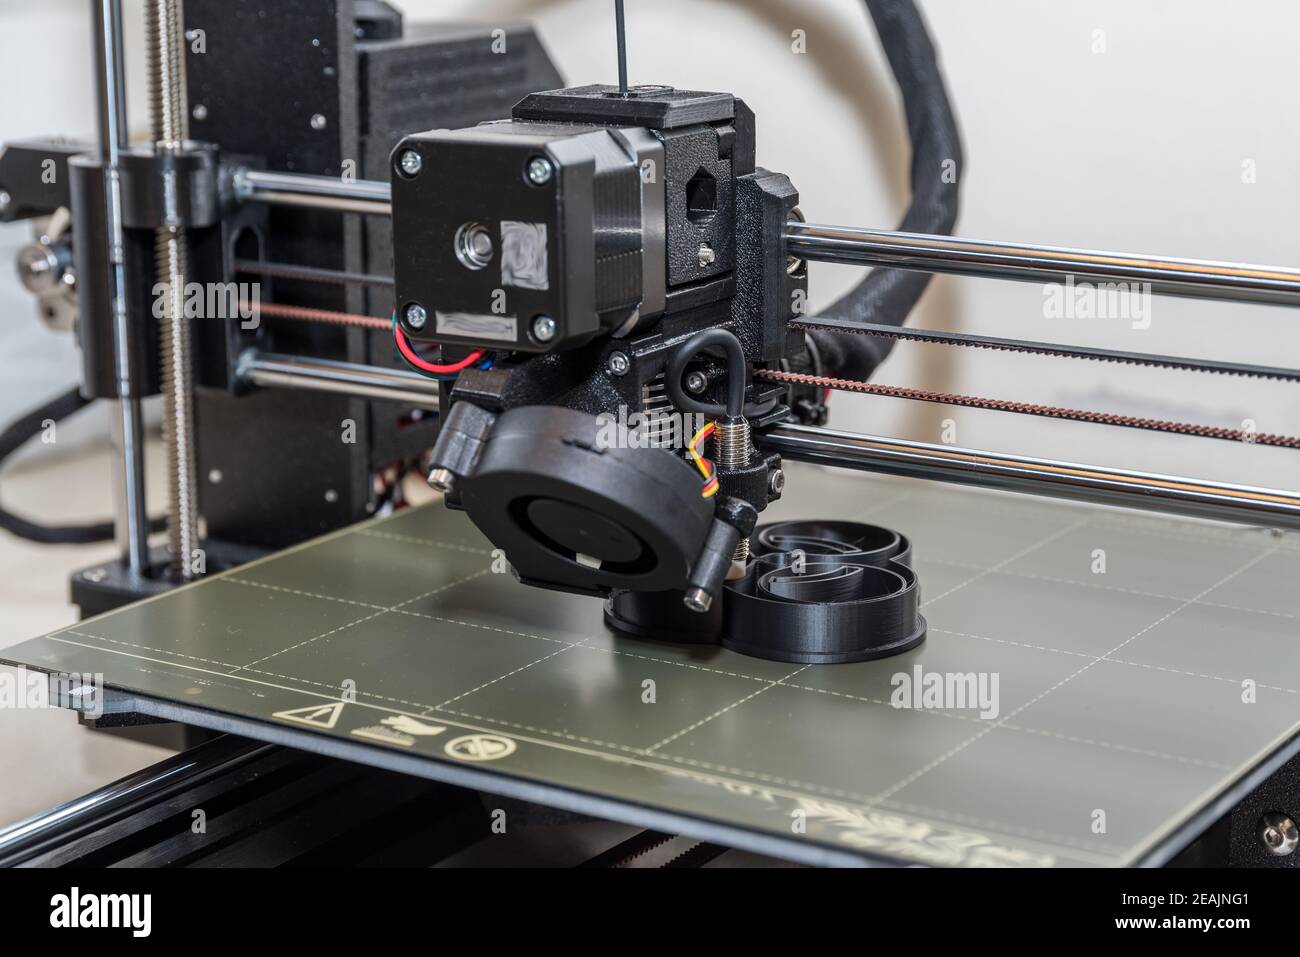 3D printer printing process - close-up Stock Photo